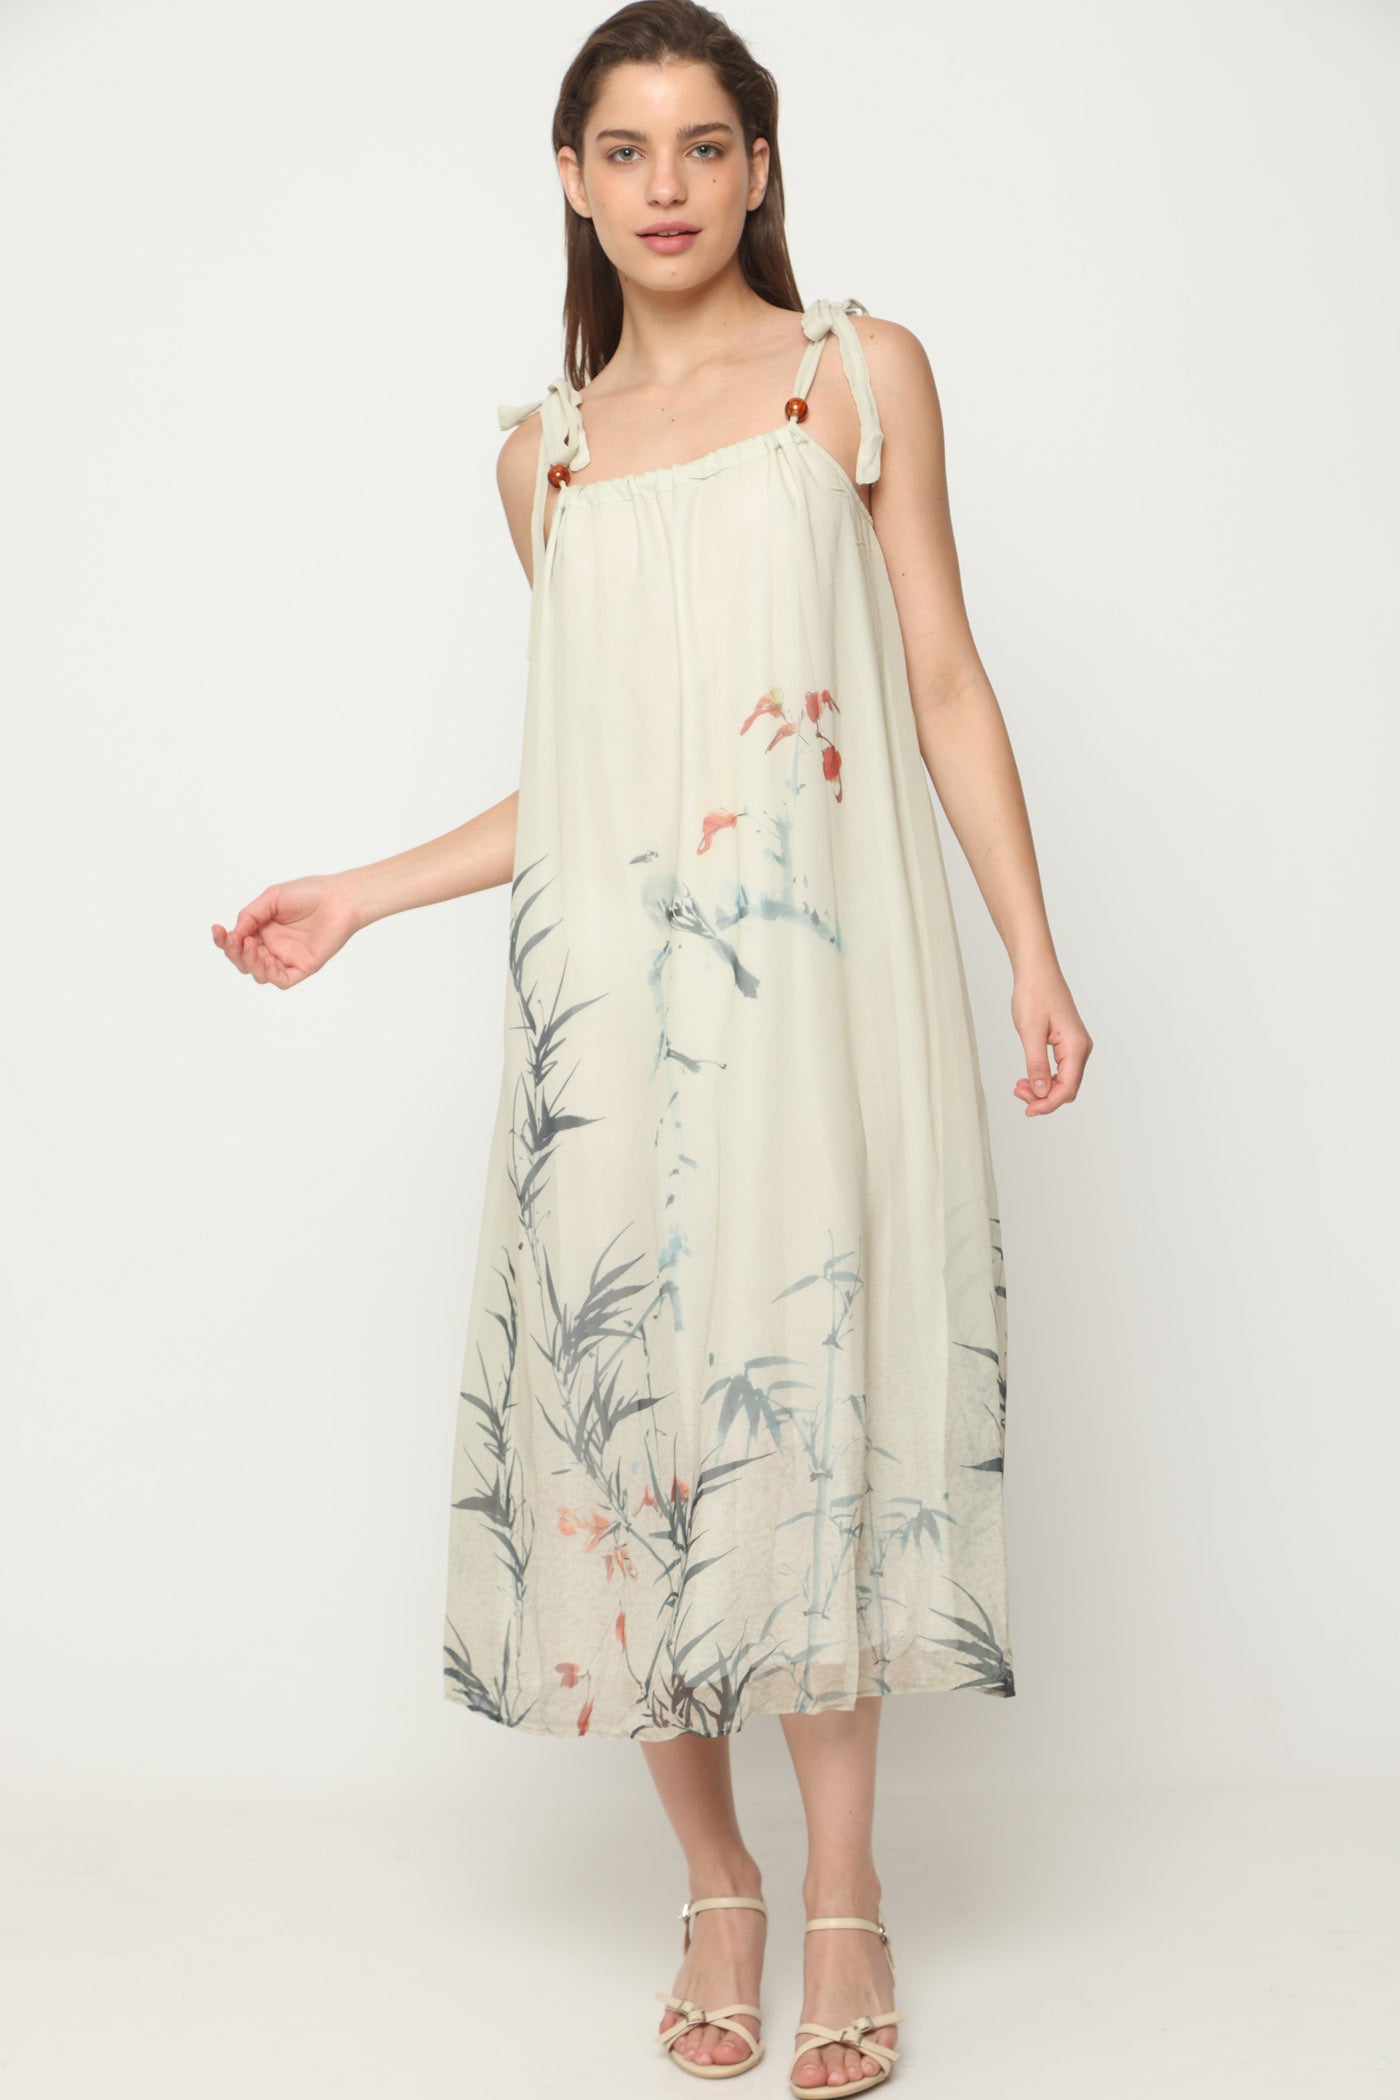 שמלת מקסי ענפים ופריחה